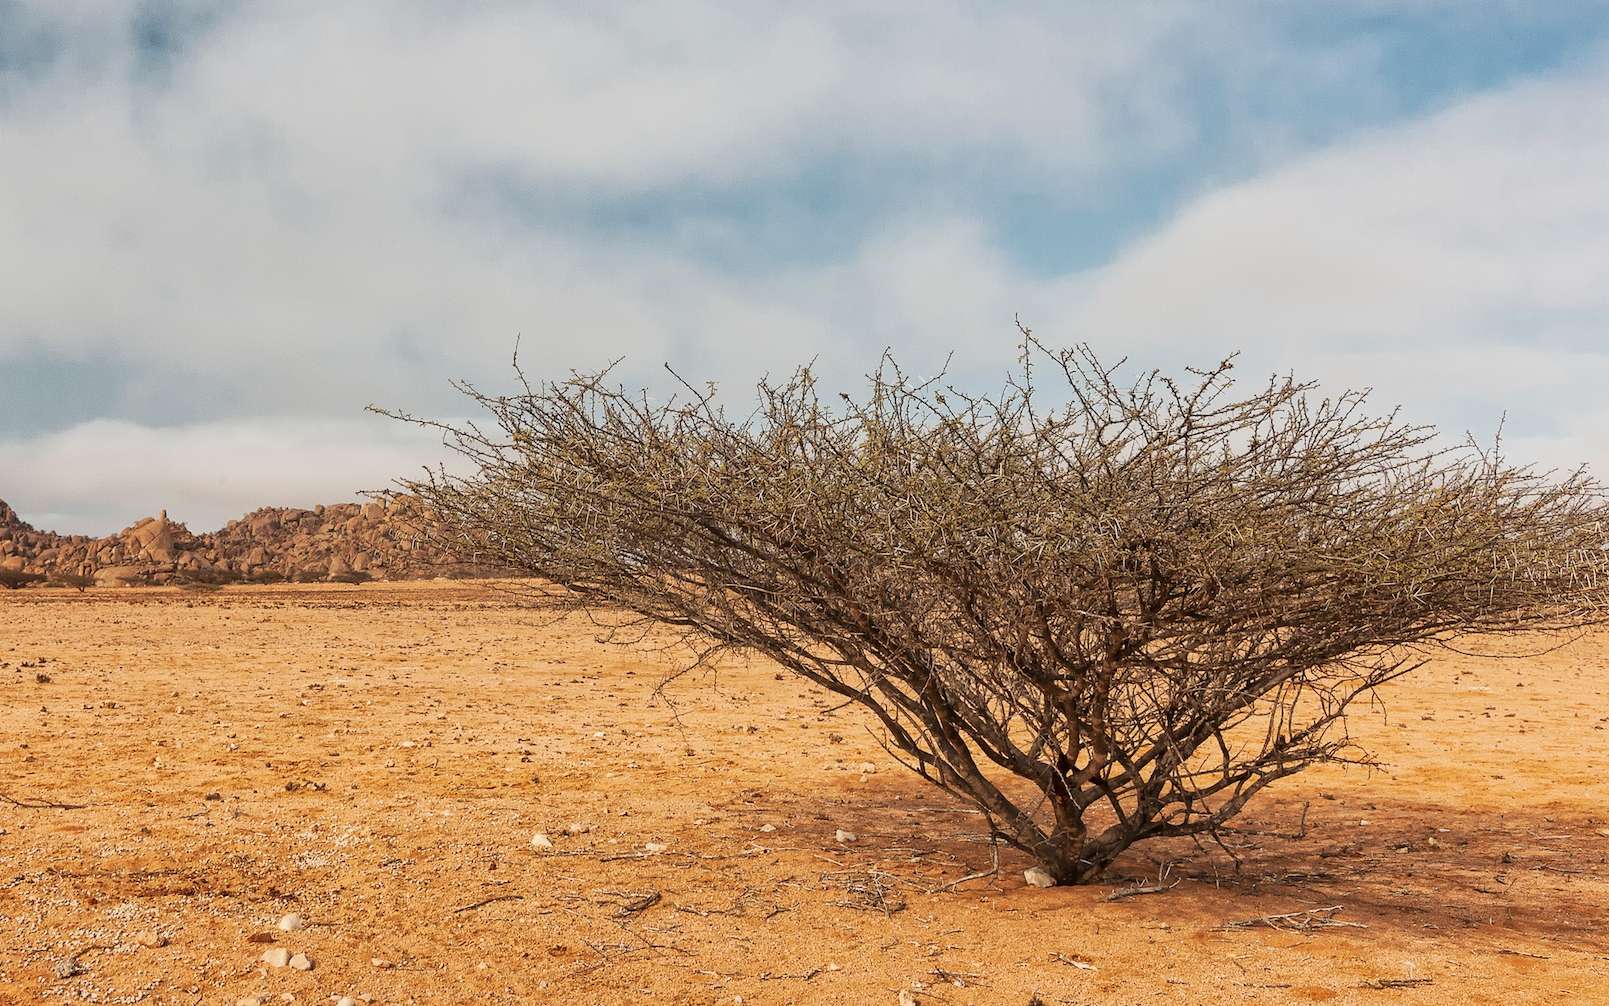 La moitié de l'Afrique est menacée d'une sécheresse désastreuse